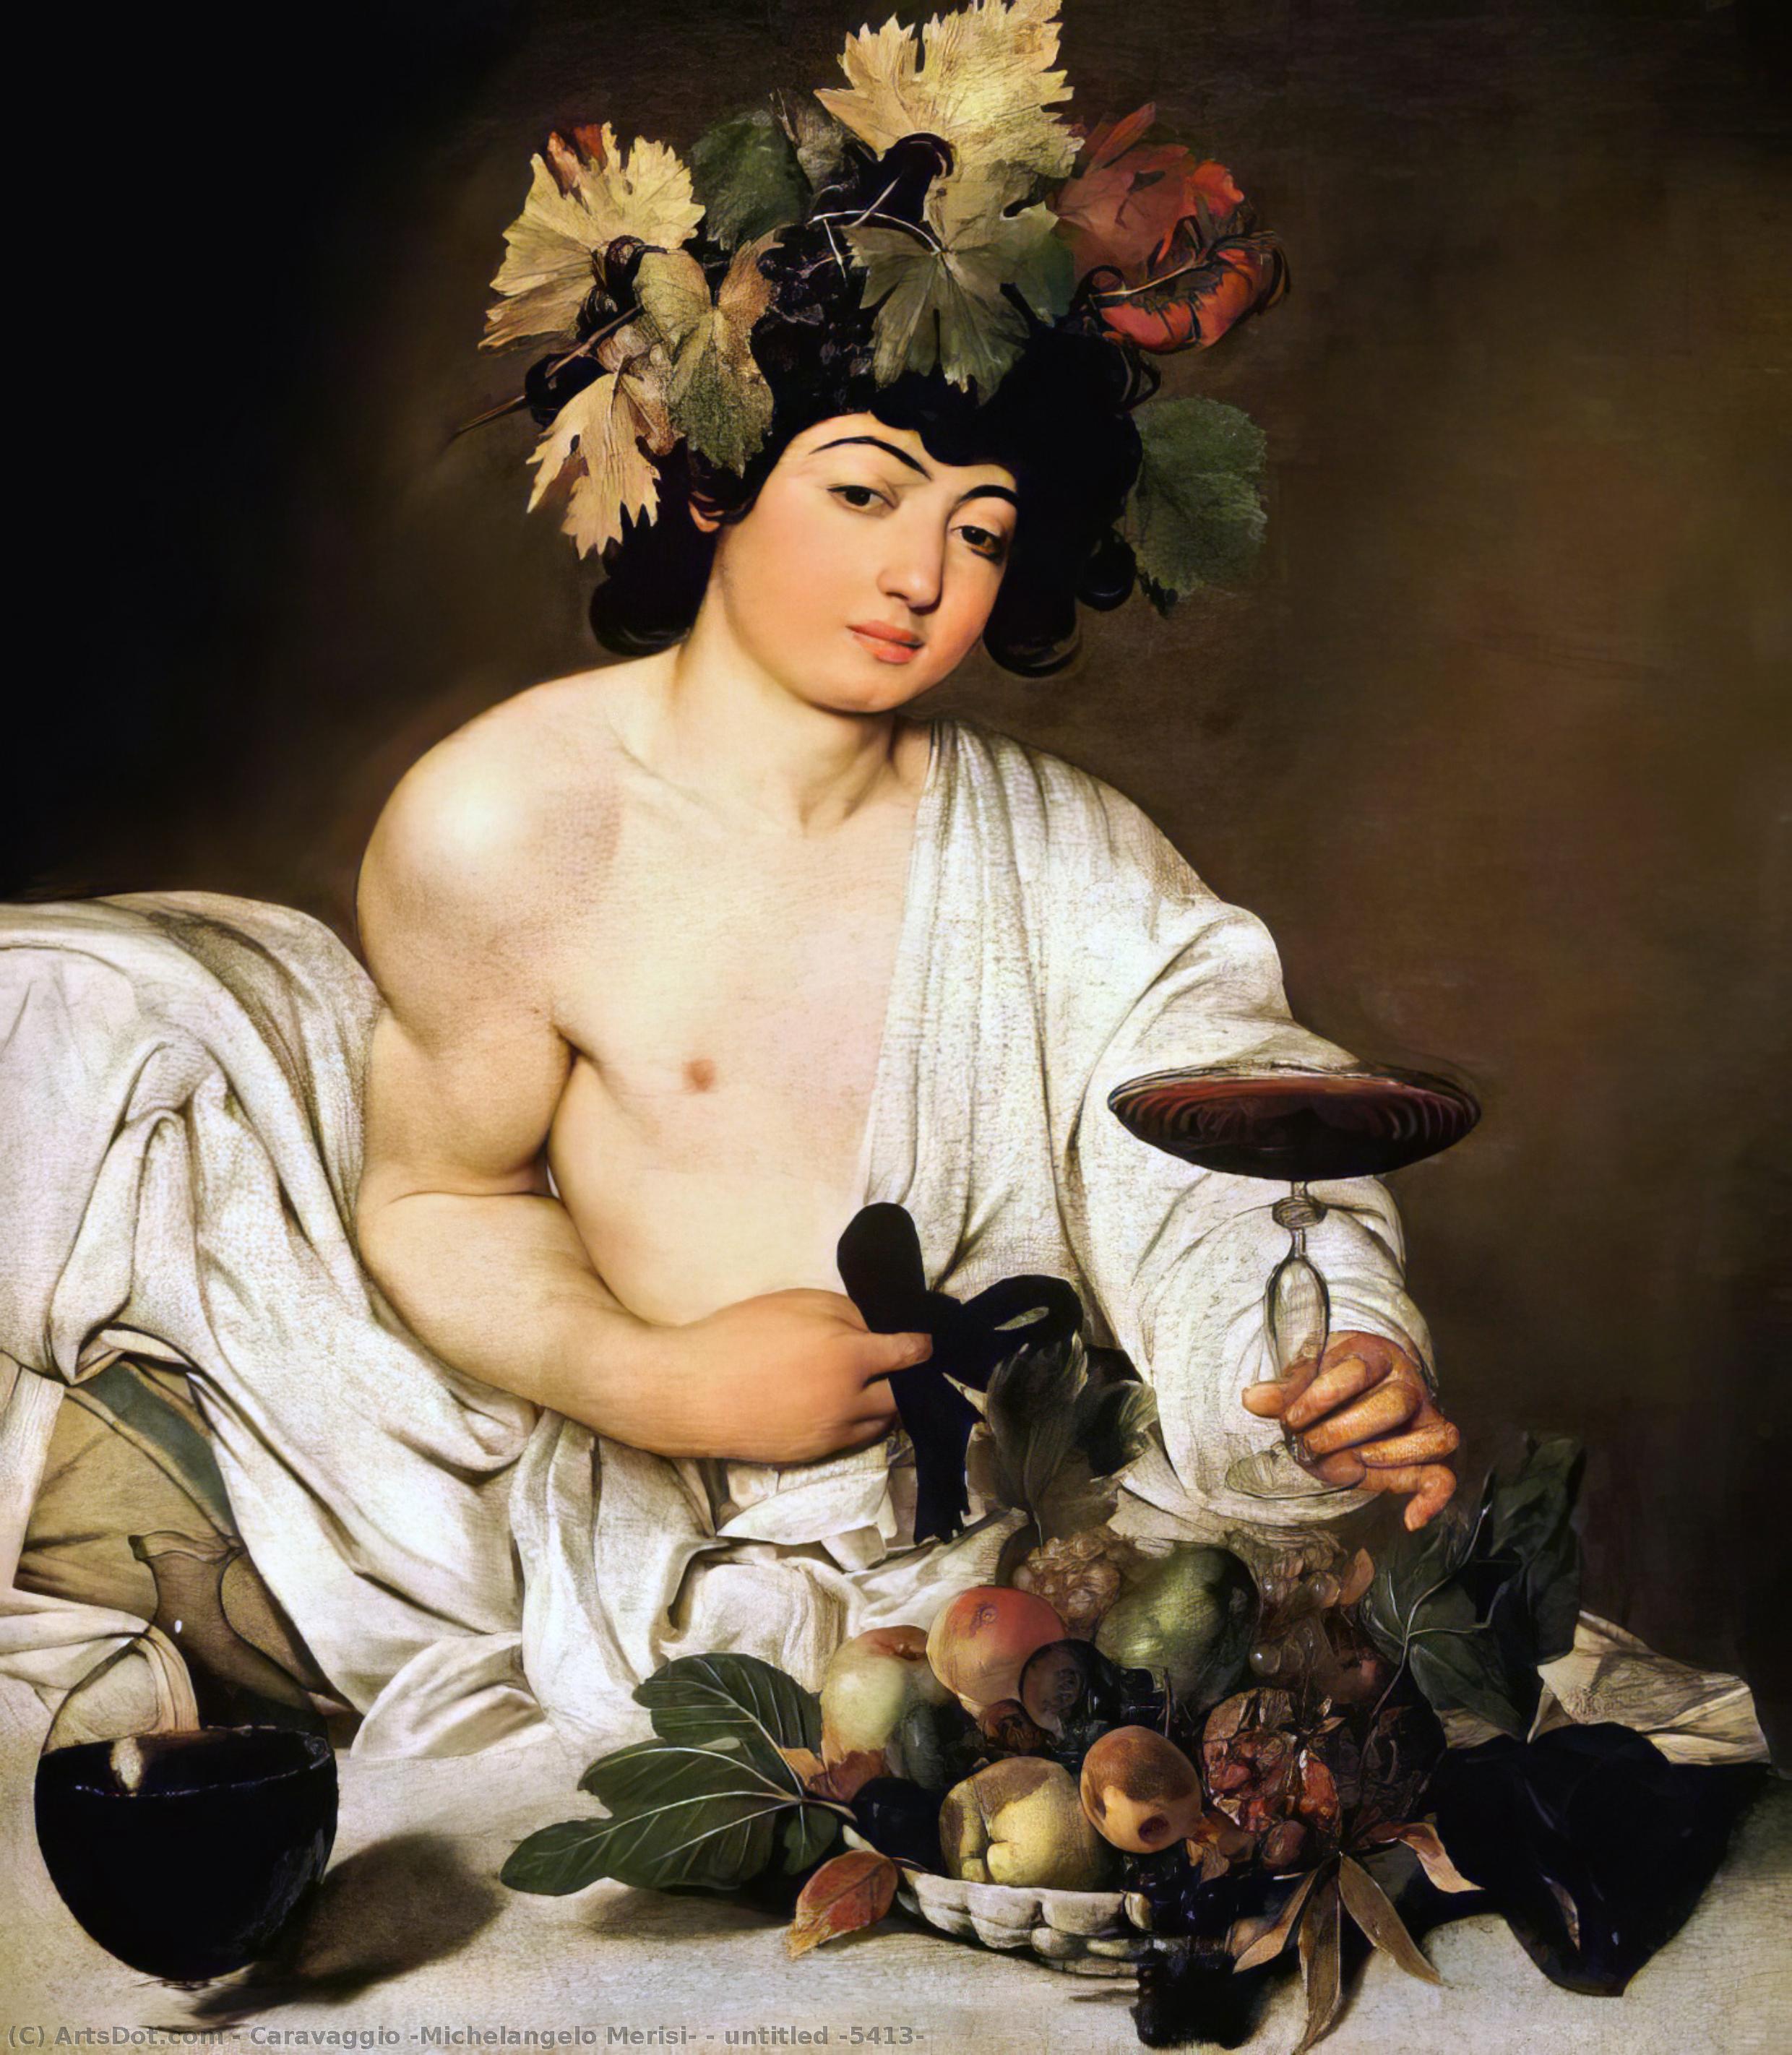 Wikioo.org - Bách khoa toàn thư về mỹ thuật - Vẽ tranh, Tác phẩm nghệ thuật Caravaggio (Michelangelo Merisi) - untitled (5413)